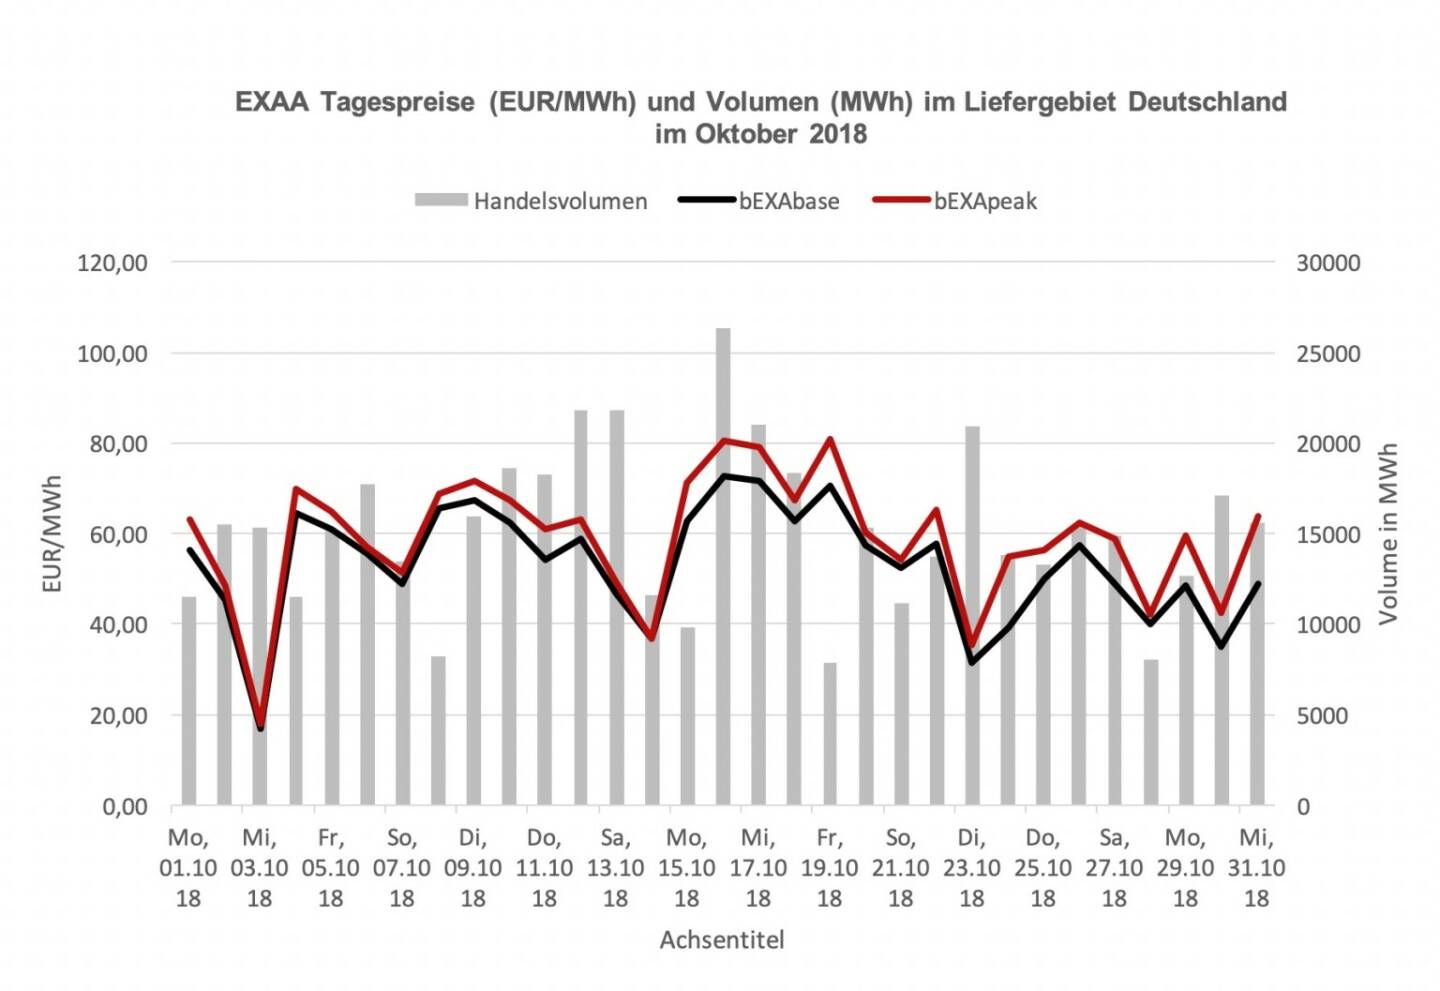 EXAA Tagespreise (EUR/MWh) und Volumen (MWh) im Liefergebiet Deutschland  im Oktober 2018